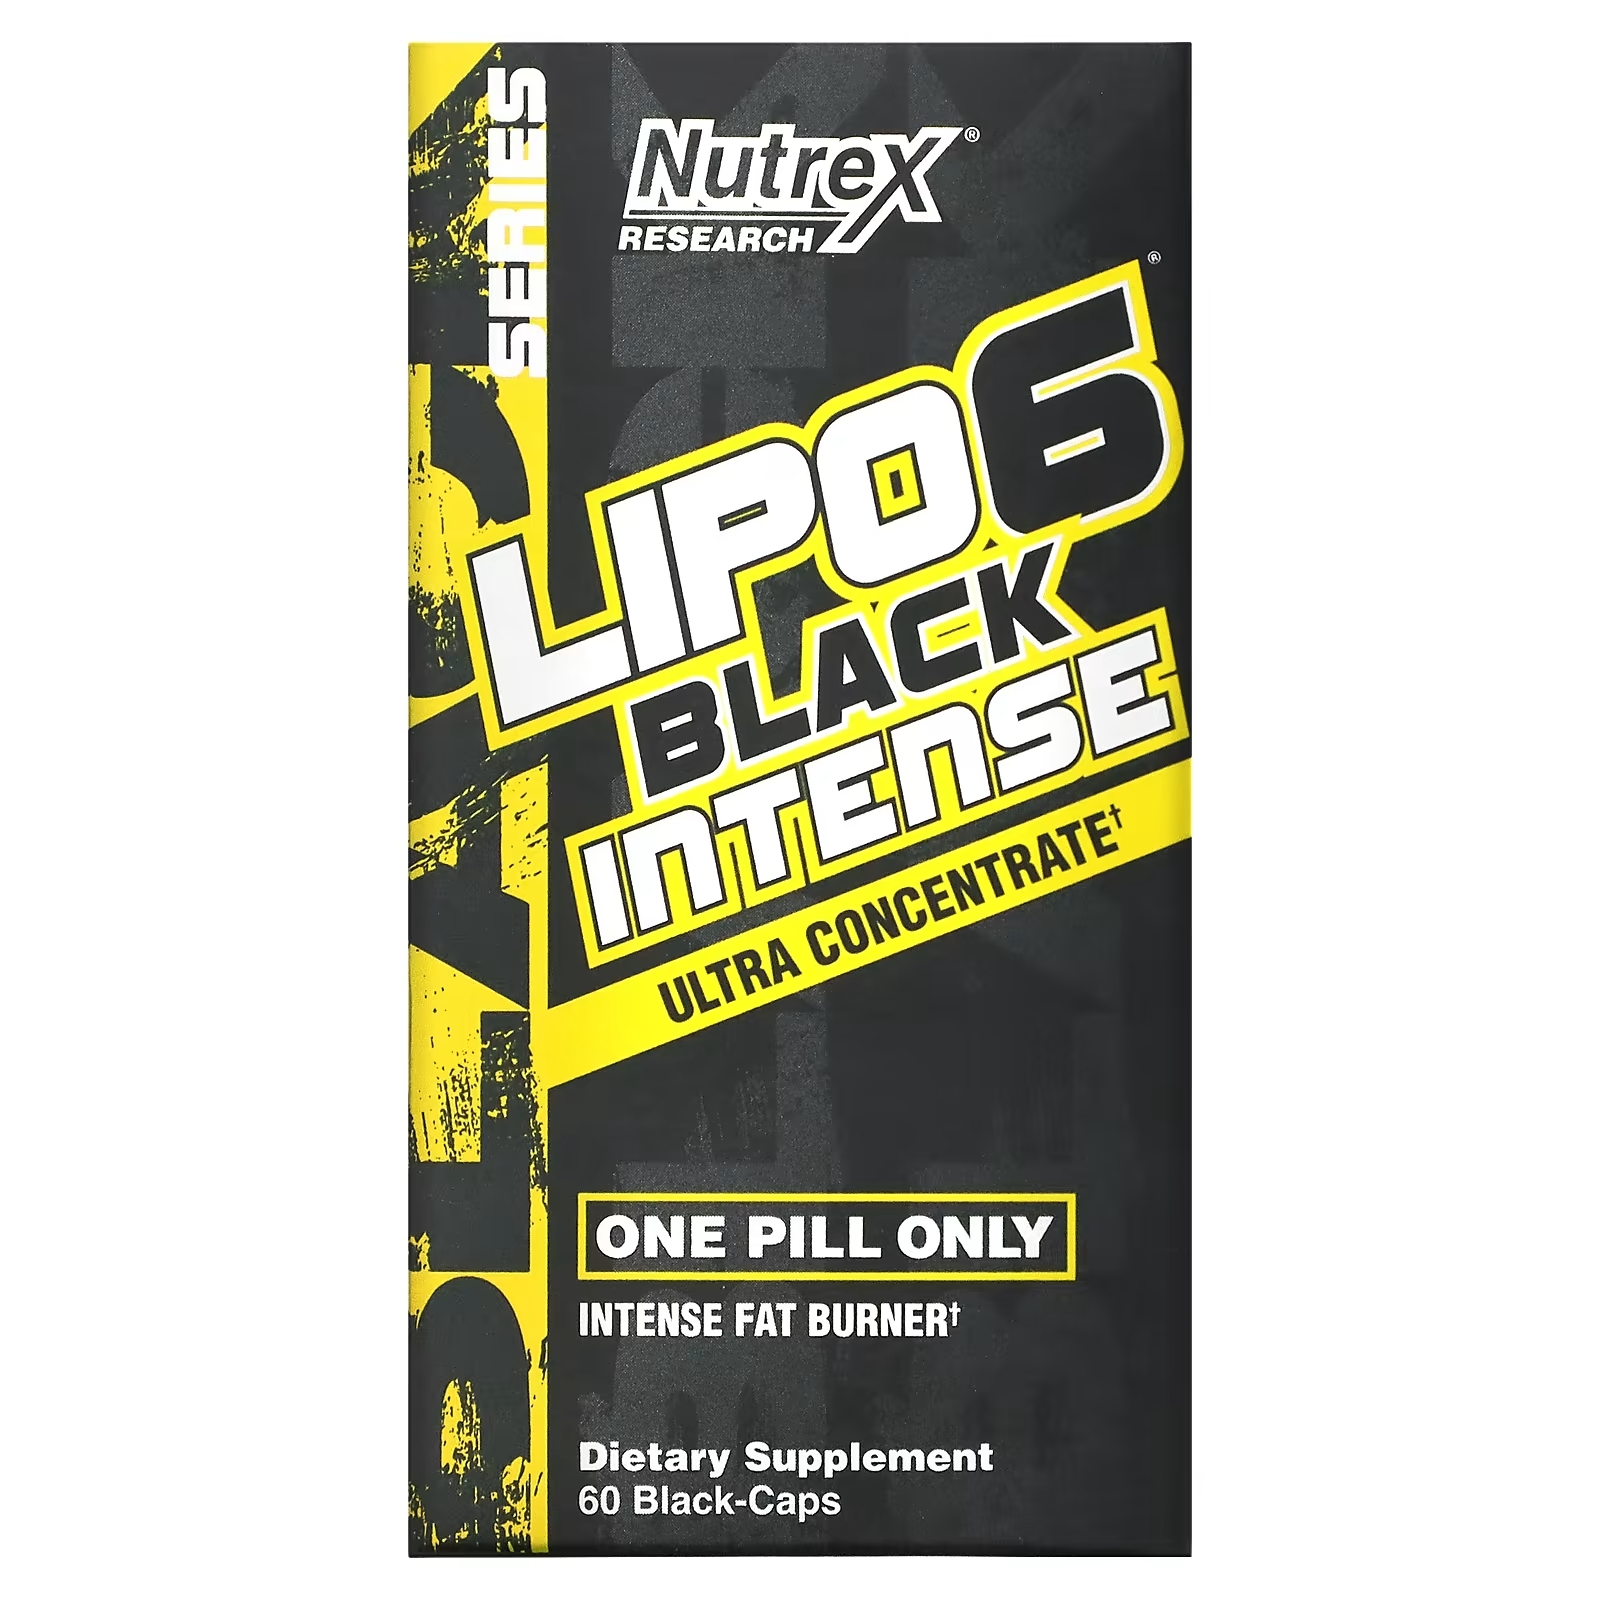 Ультраконцентрат Nutrex Research LIPO-6 Black Intense, 60 капсул nutrex research lipo 6 black stim free ультраконцентрат для снижения веса без стимуляторов 60 черных капсул